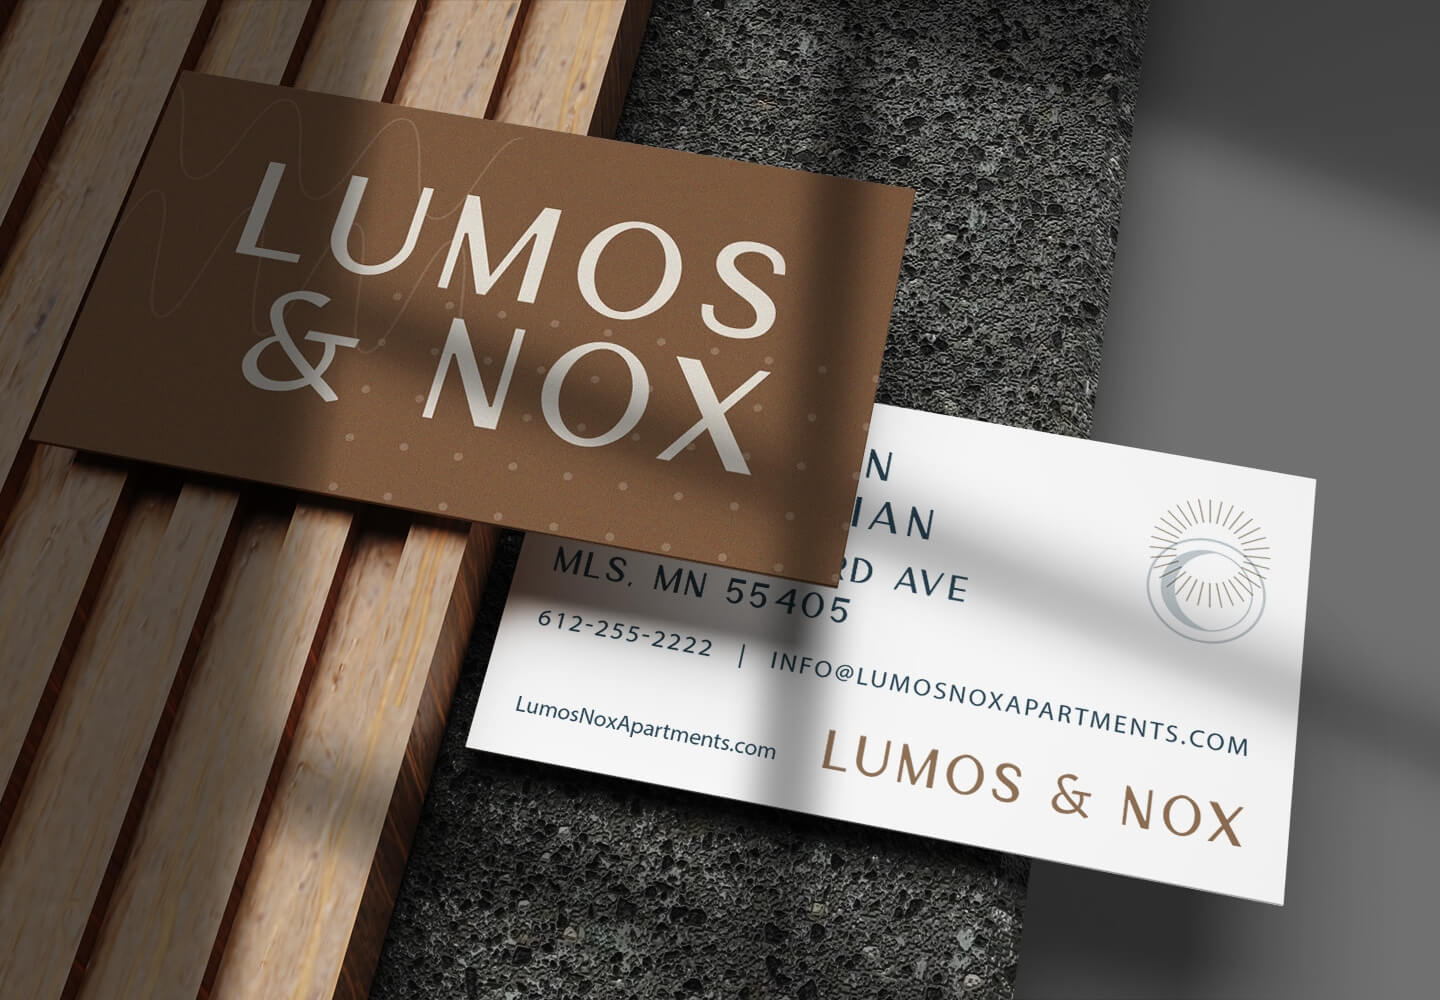 lumos & nox business cards